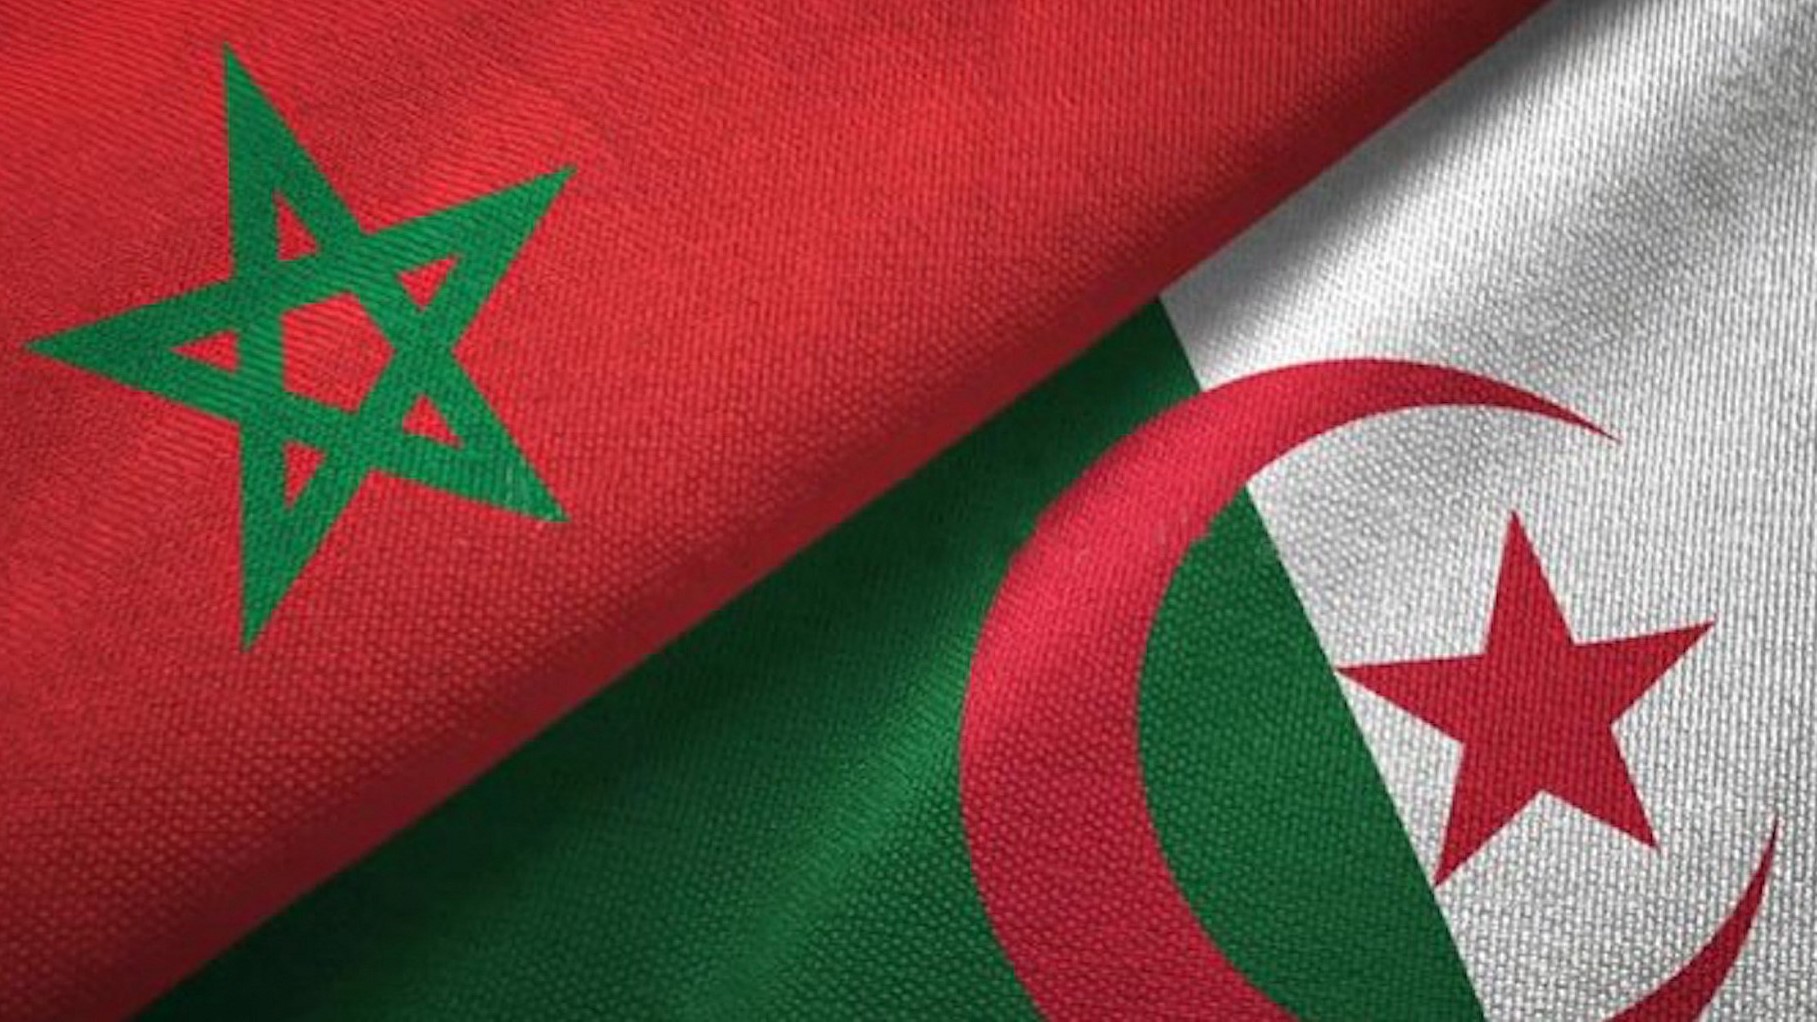 Maroc-Algérie : l’Union Internationale des oulémas appelle au calme